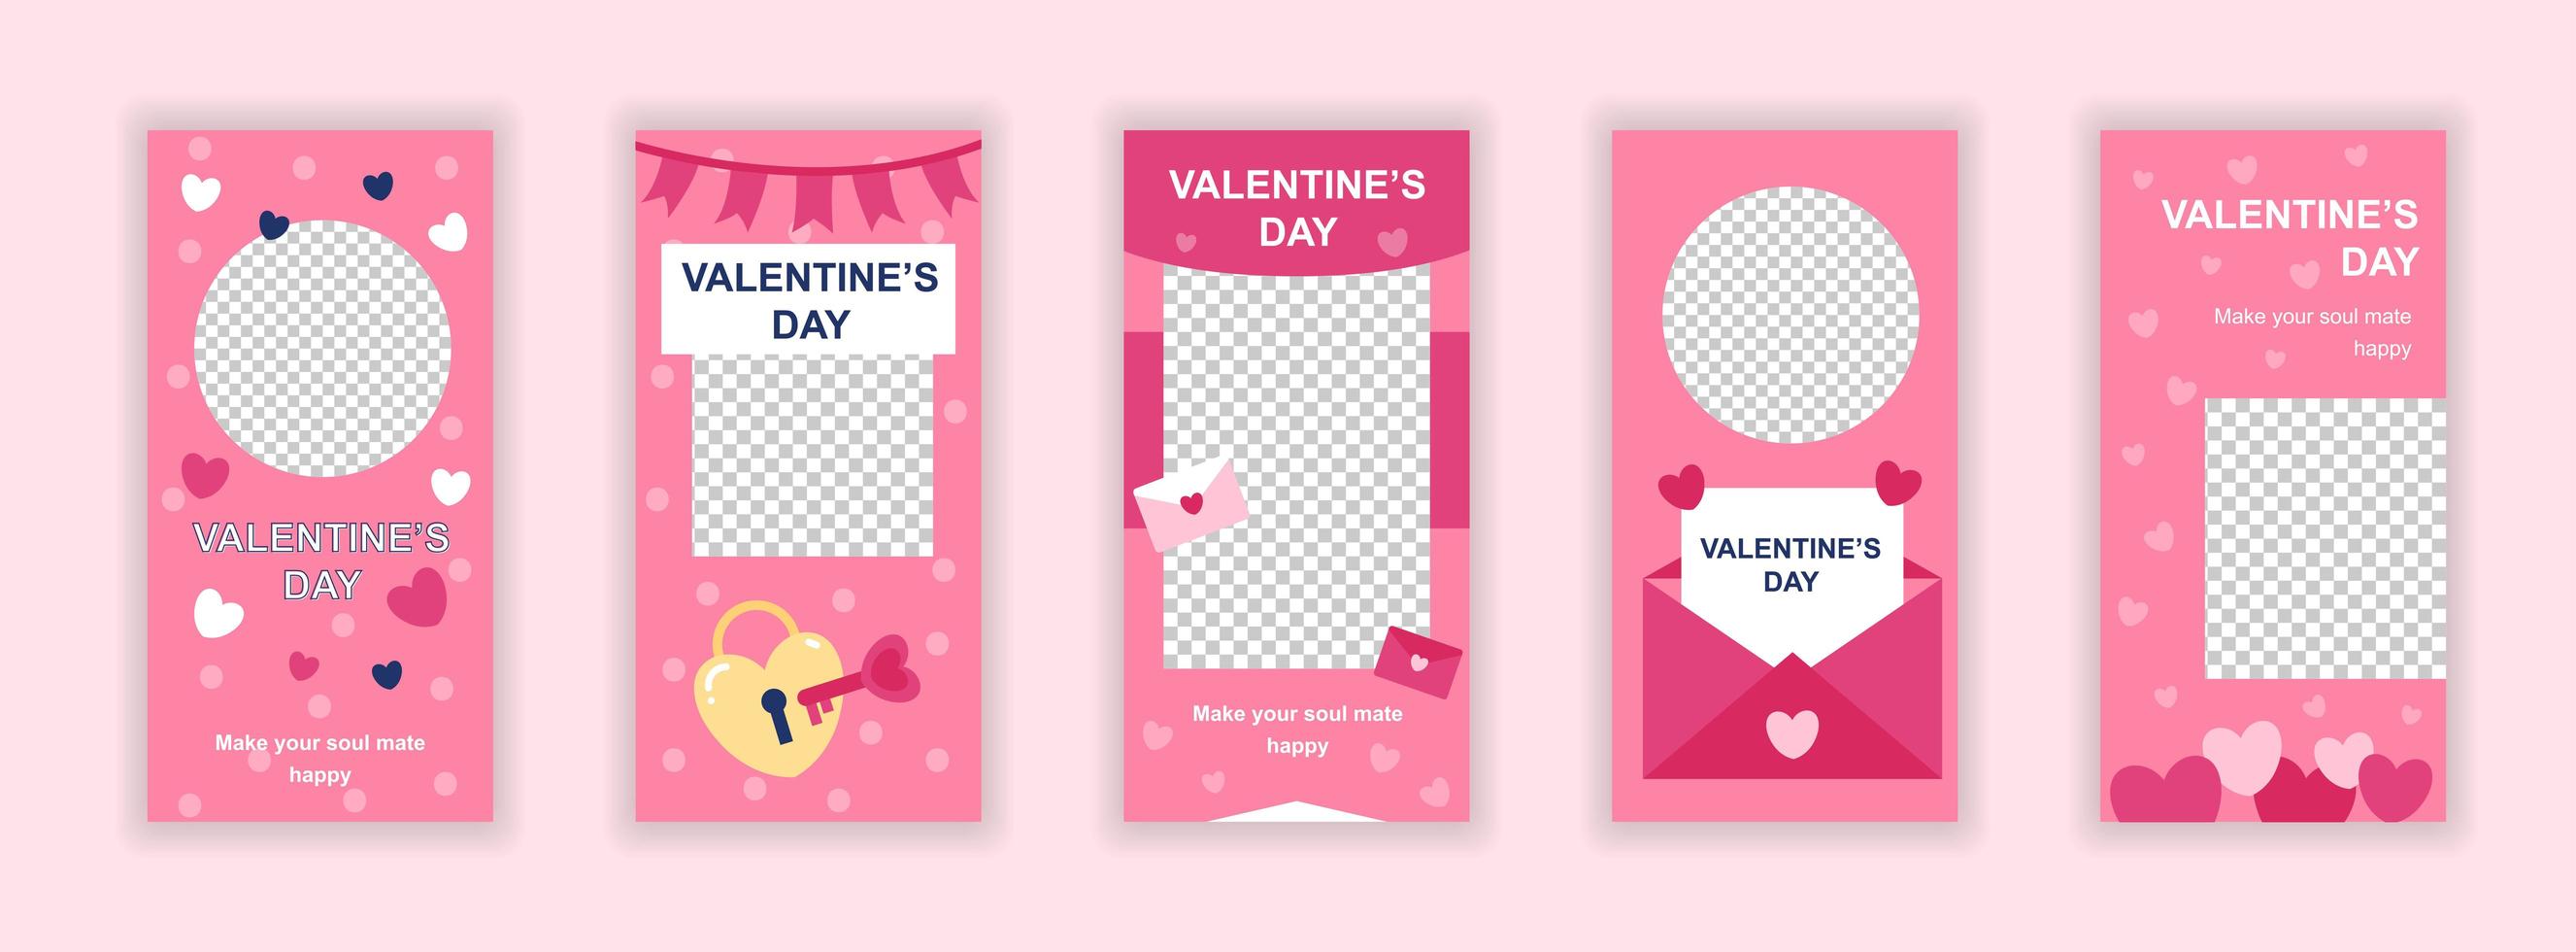 Plantillas editables del día de San Valentín para historias de redes sociales. vector